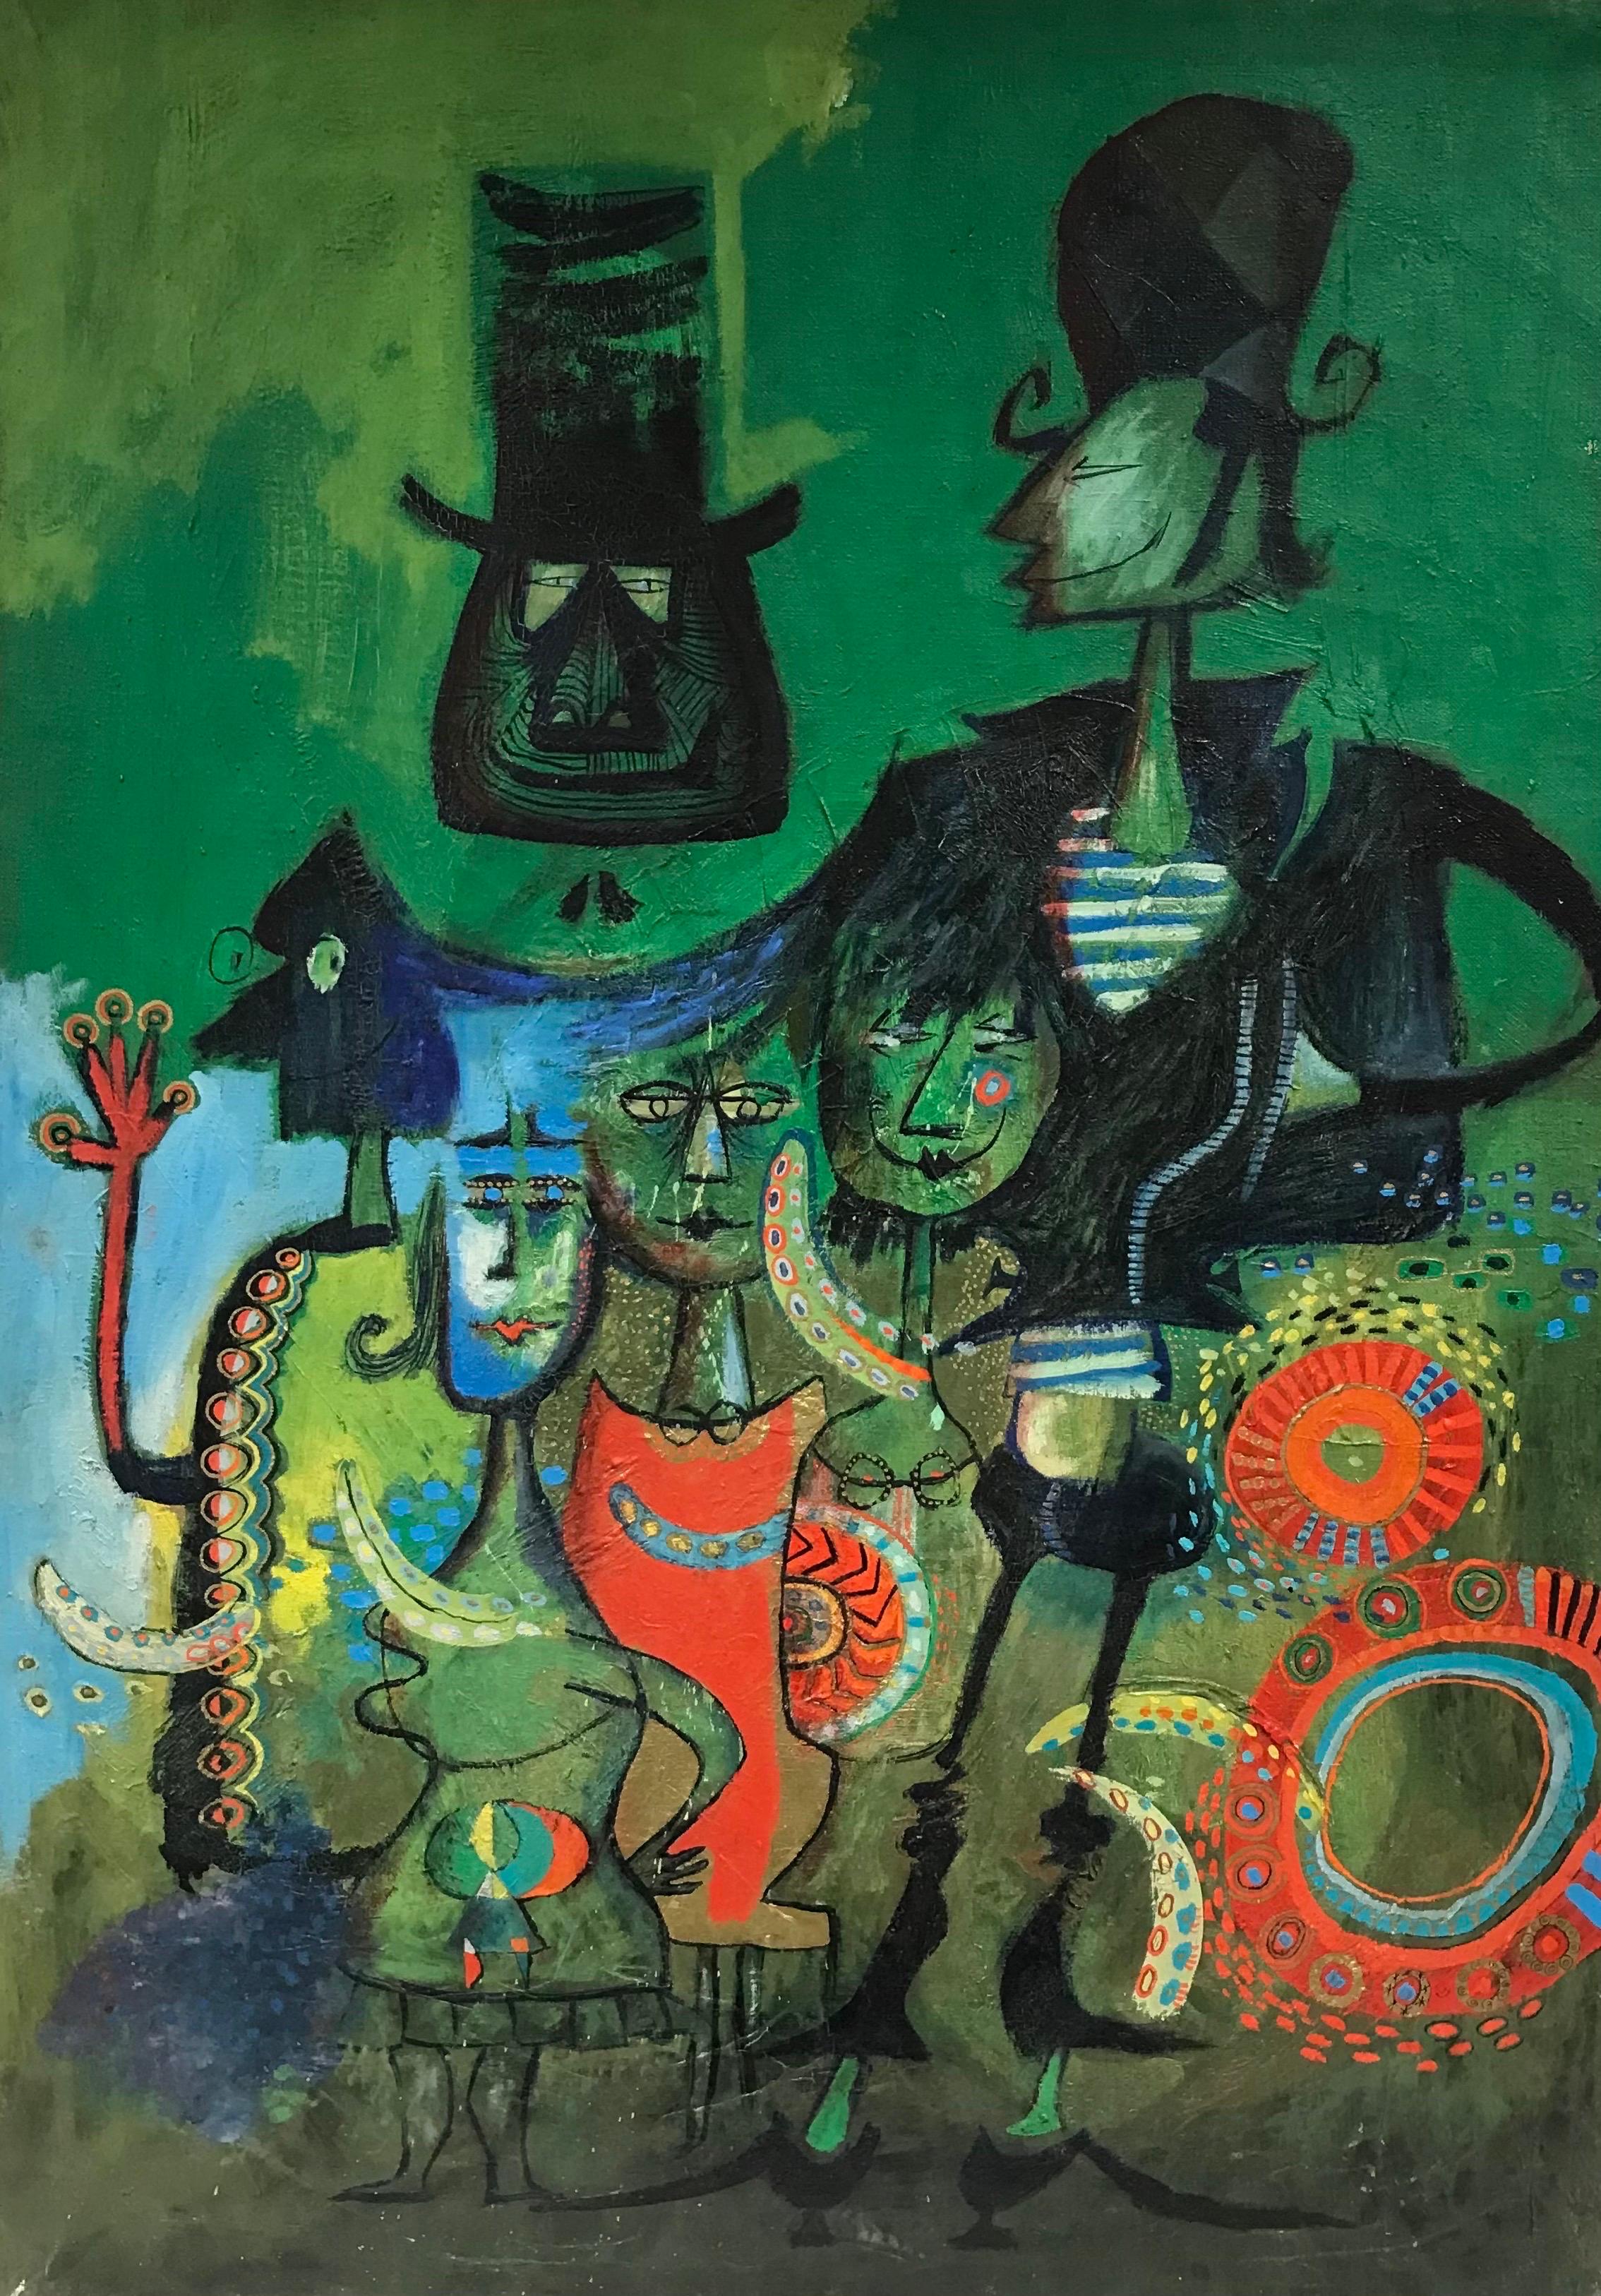 Abstract Painting 20th Century French School - Peinture à l'huile moderniste française des années 1960 sur fond vert avec des figuresbizarres